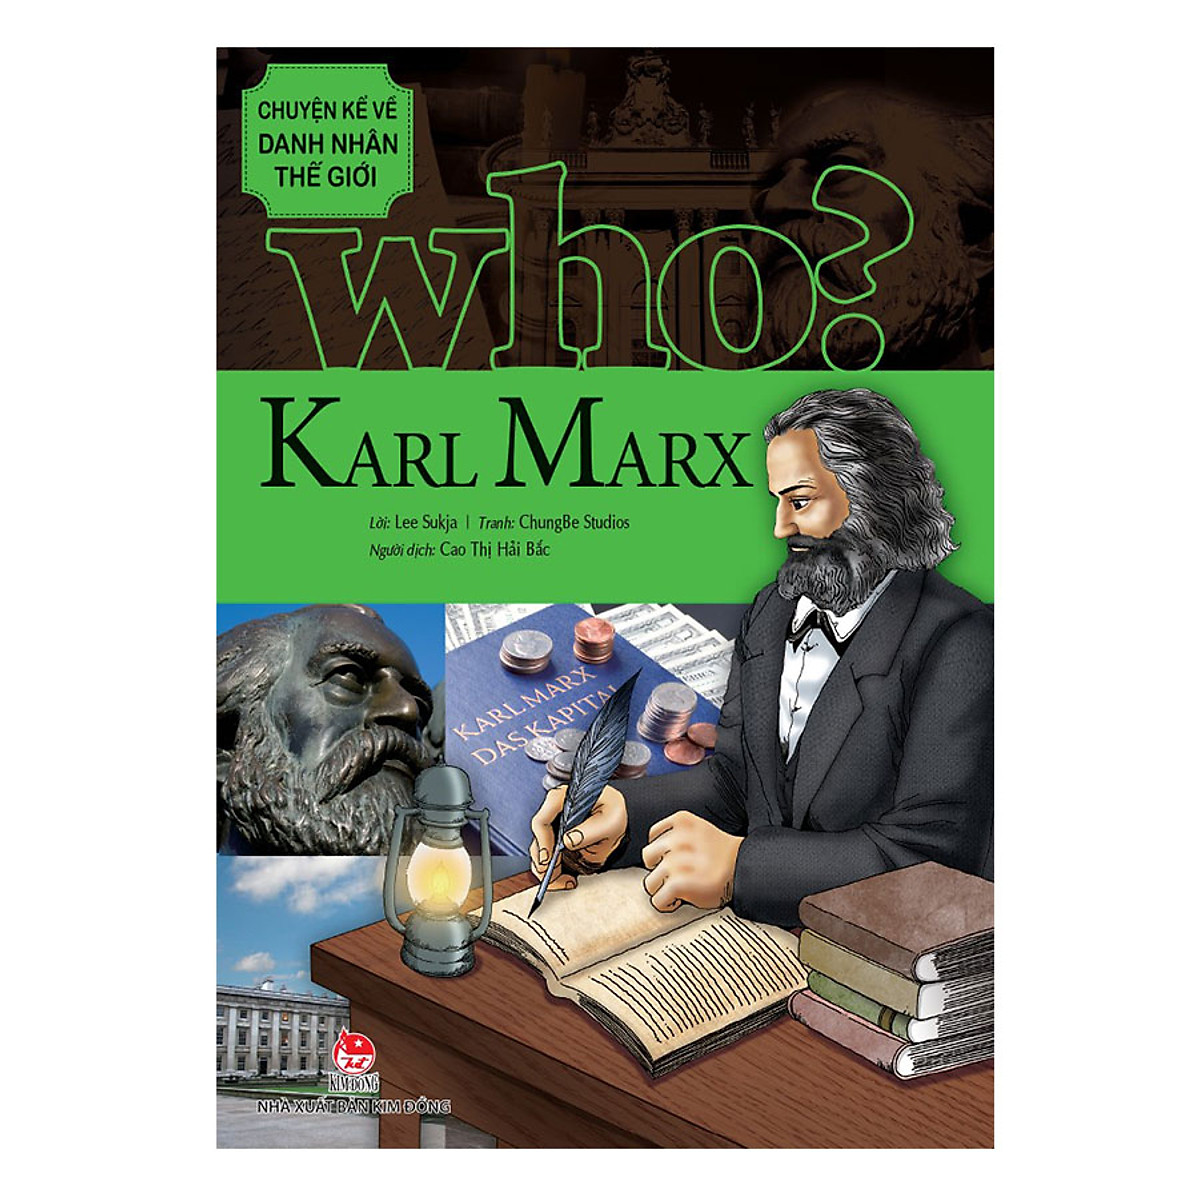 Chuyện Kể Về Danh Nhân Thế Giới: Karl Marx